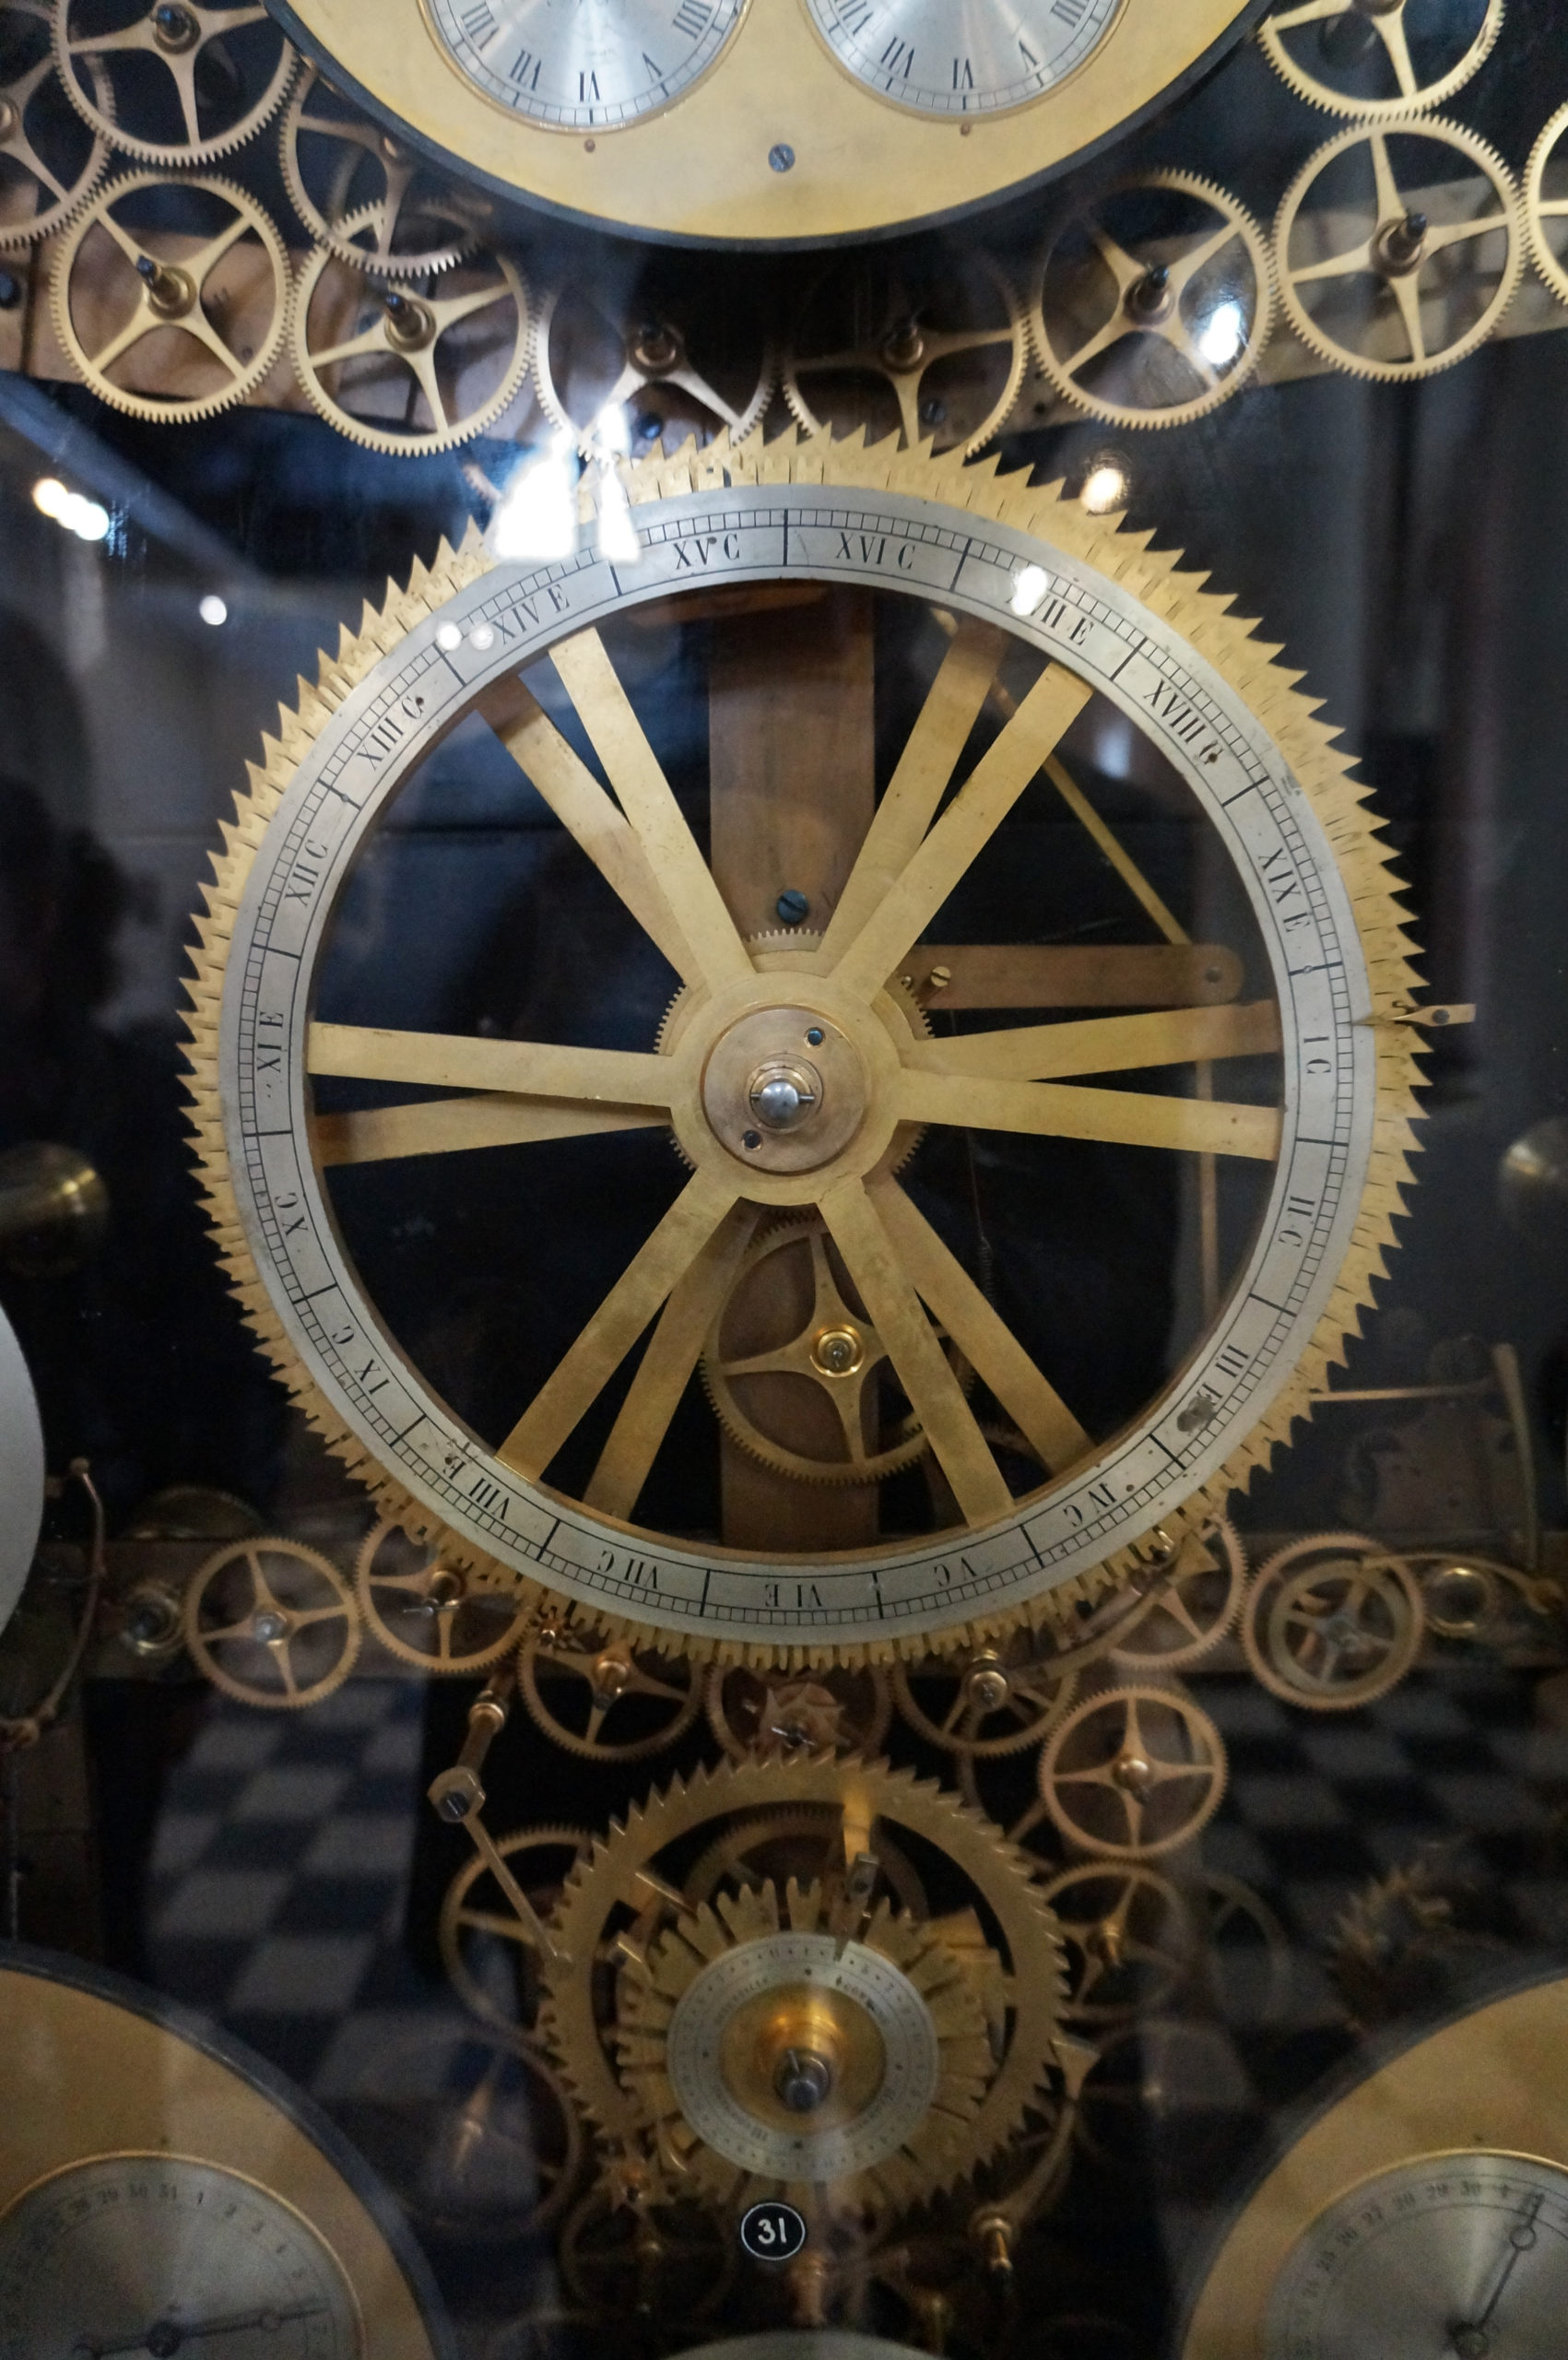 Единственные в мире универсальные астрономические часы